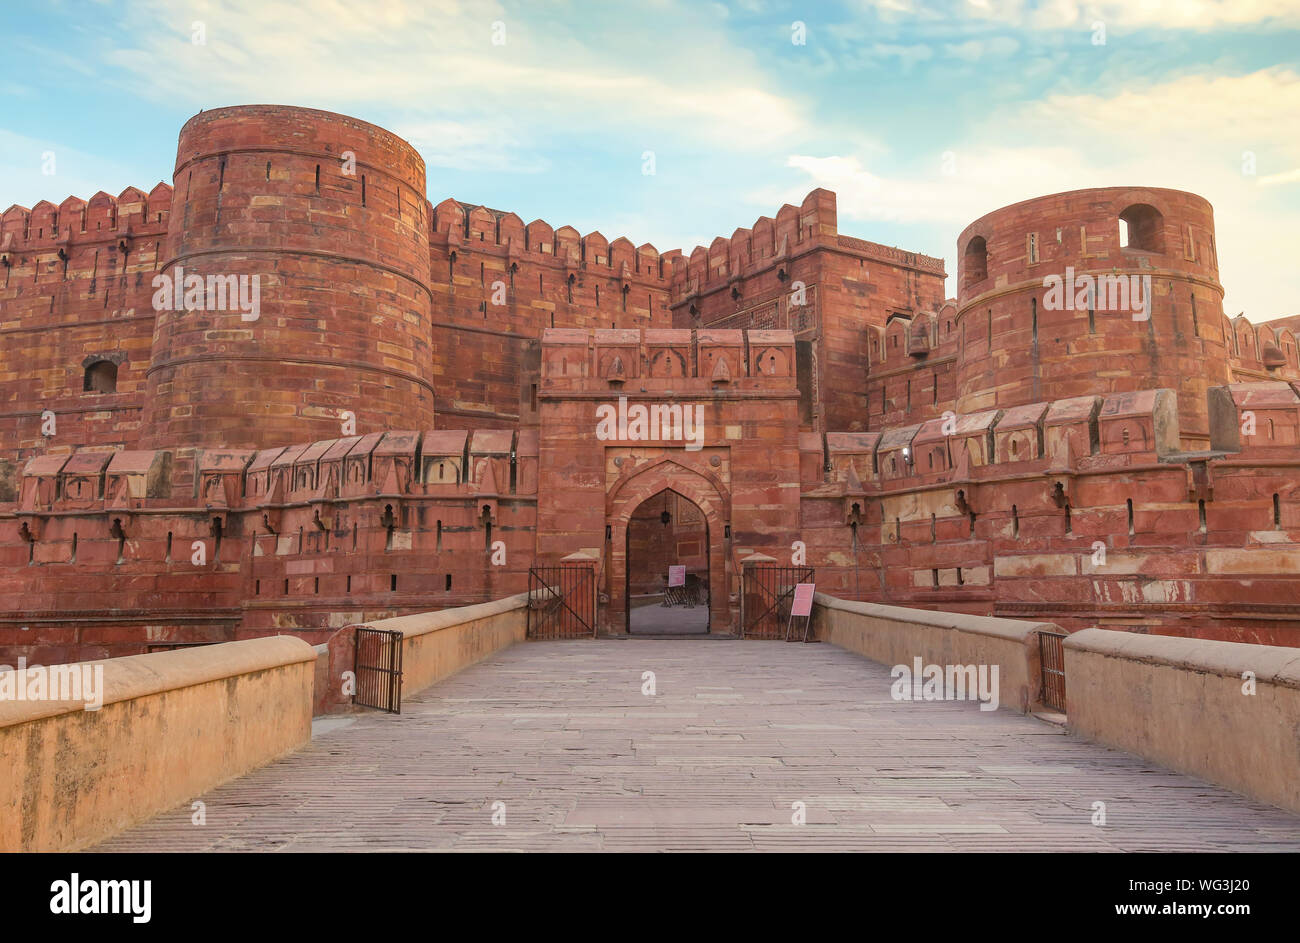 Agra Fort - historischen roten Sandstein fort von mittelalterlichen Indien bei Sonnenaufgang. Agra Fort ist ein UNESCO Weltkulturerbe in der Stadt Agra Indien. Stockfoto